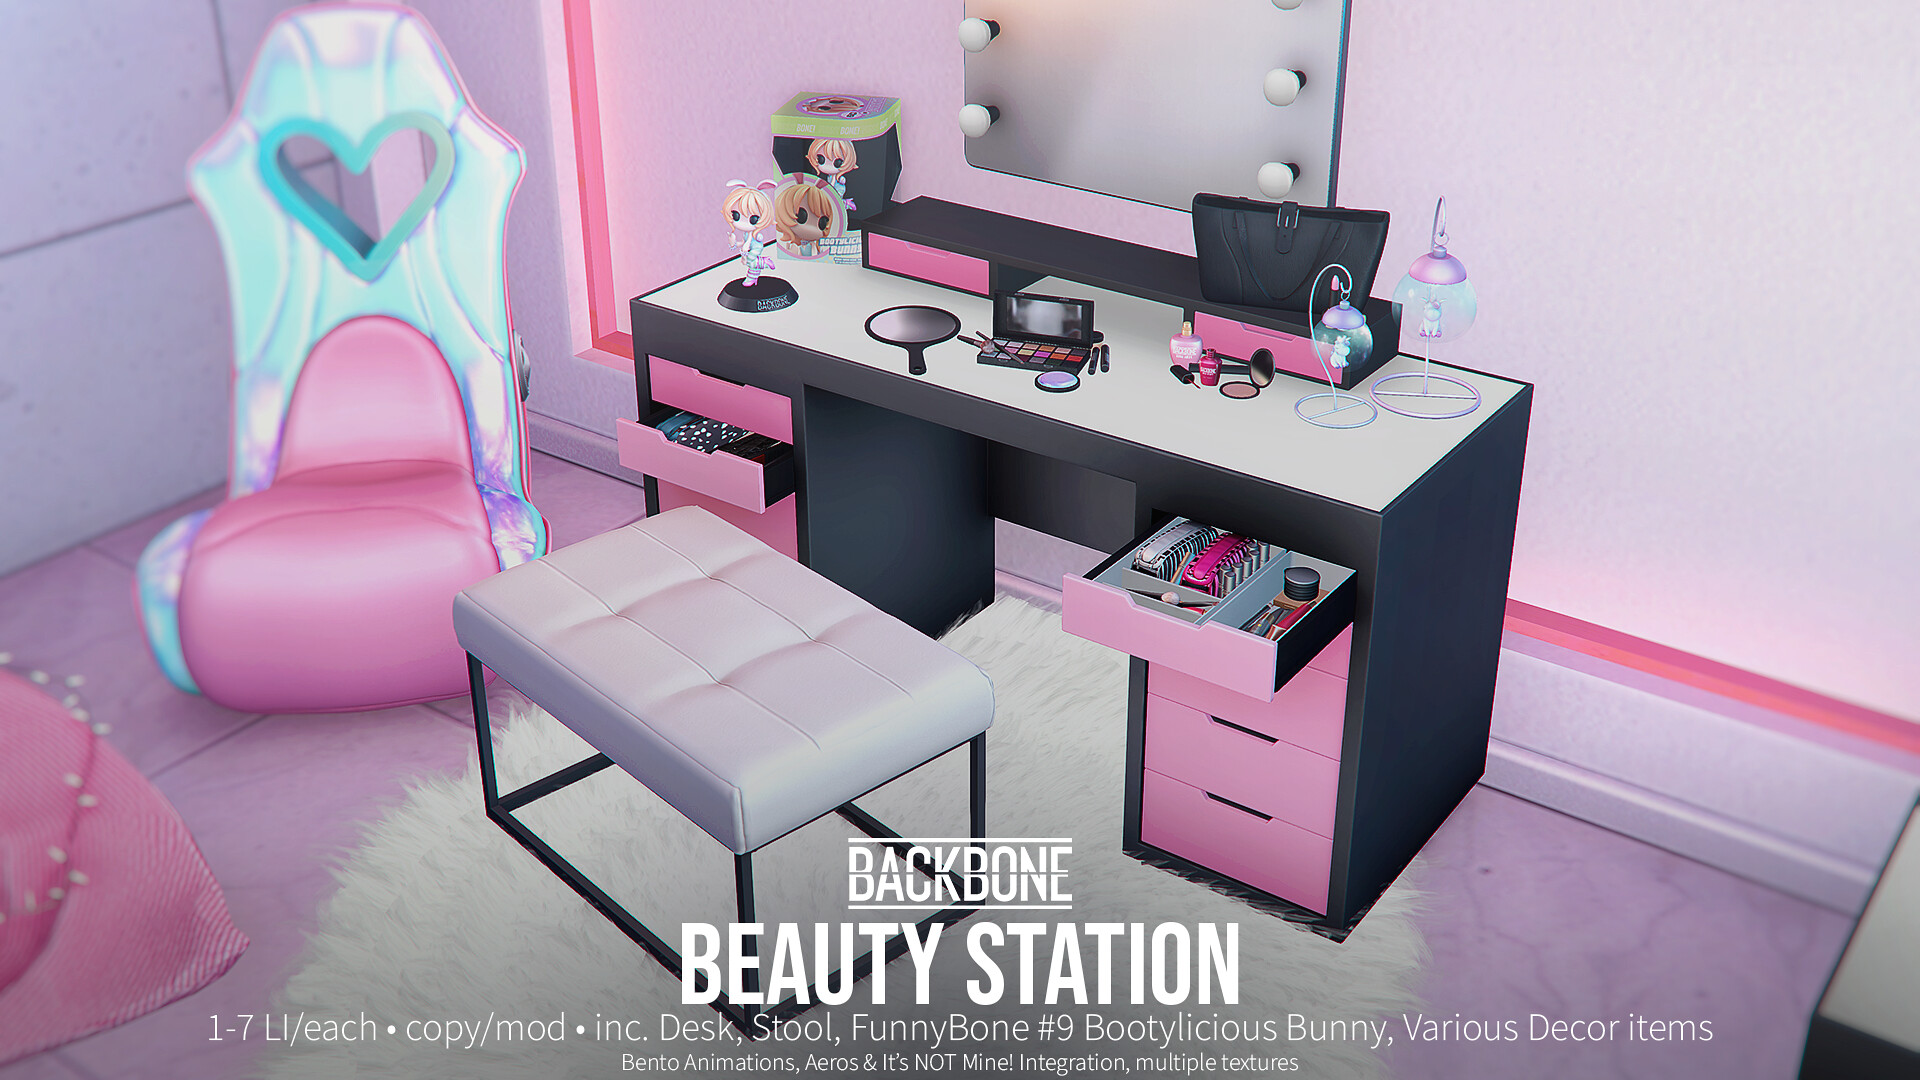 BackBone – Beauty Station